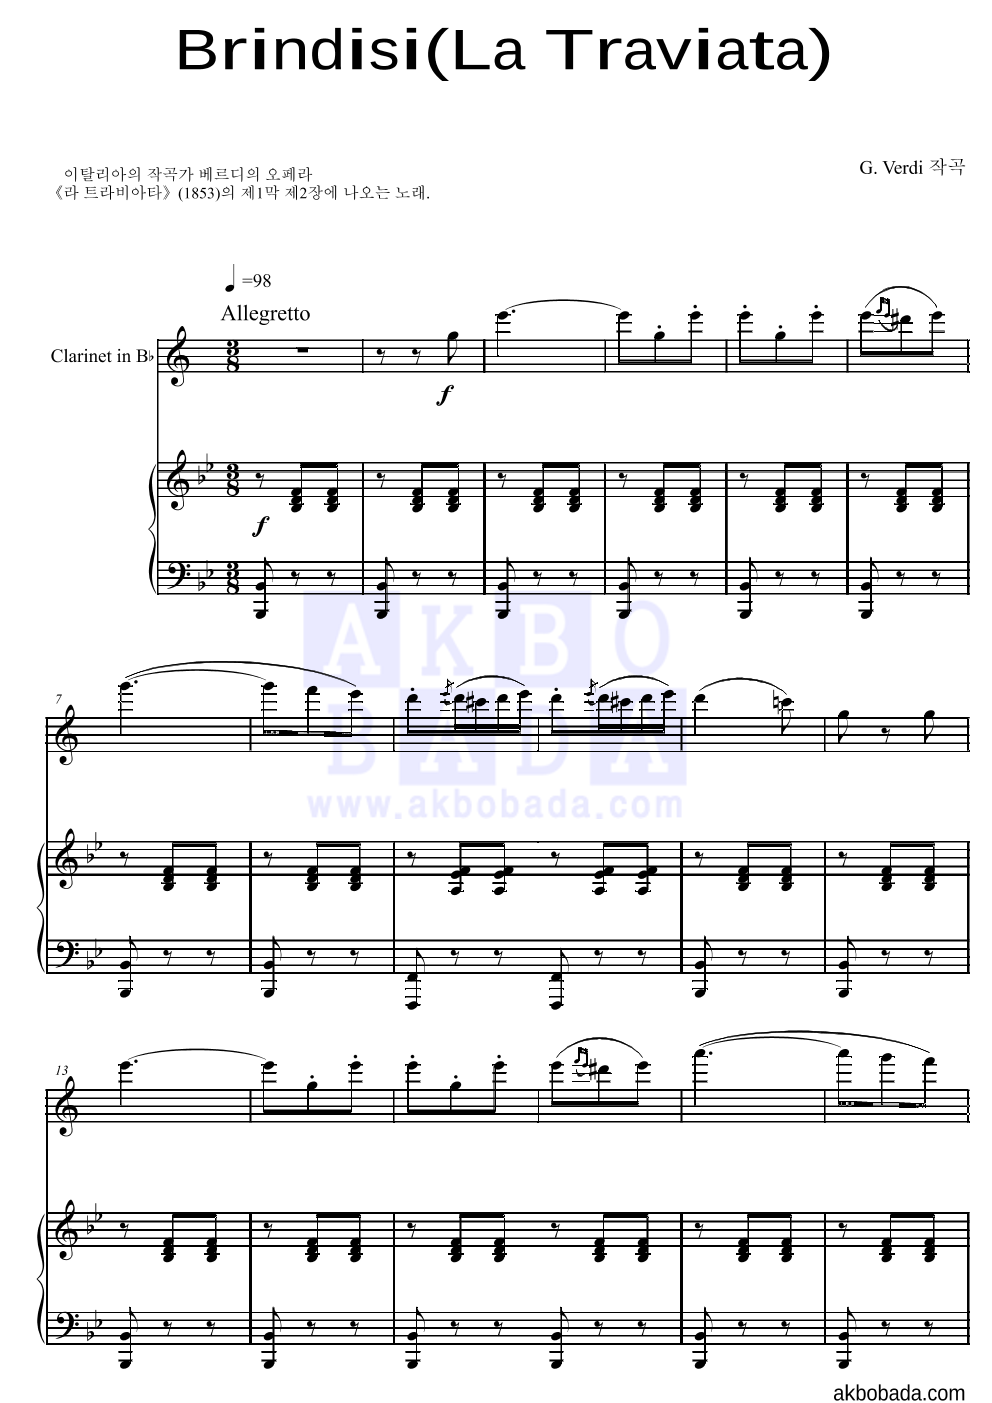 베르디 - Brindisi(La Traviata)축배의 노래 클라리넷&피아노 악보 